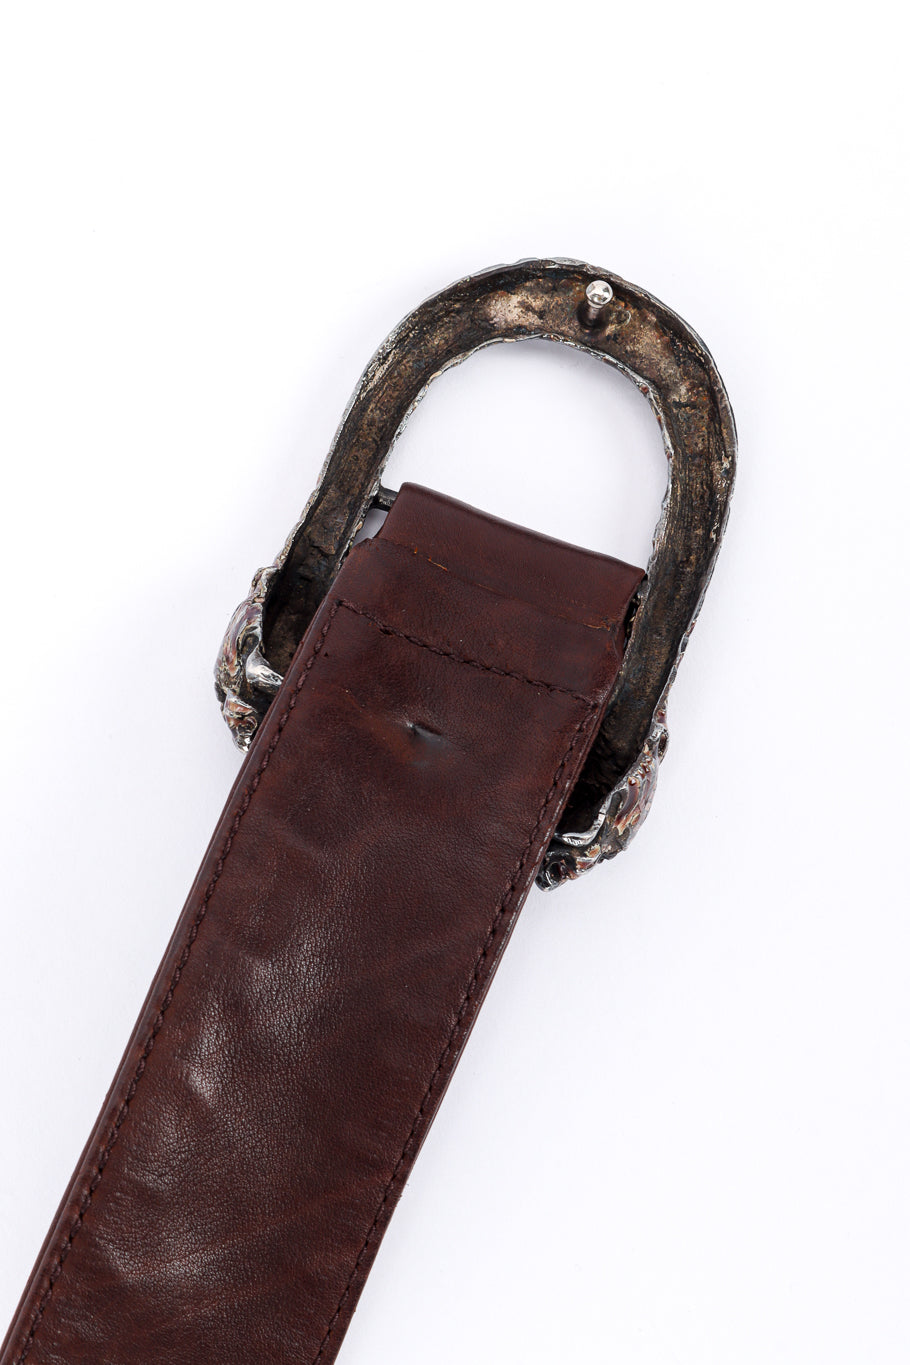 Vintage Gucci Suede and Leather Coat belt buckle back @recessla